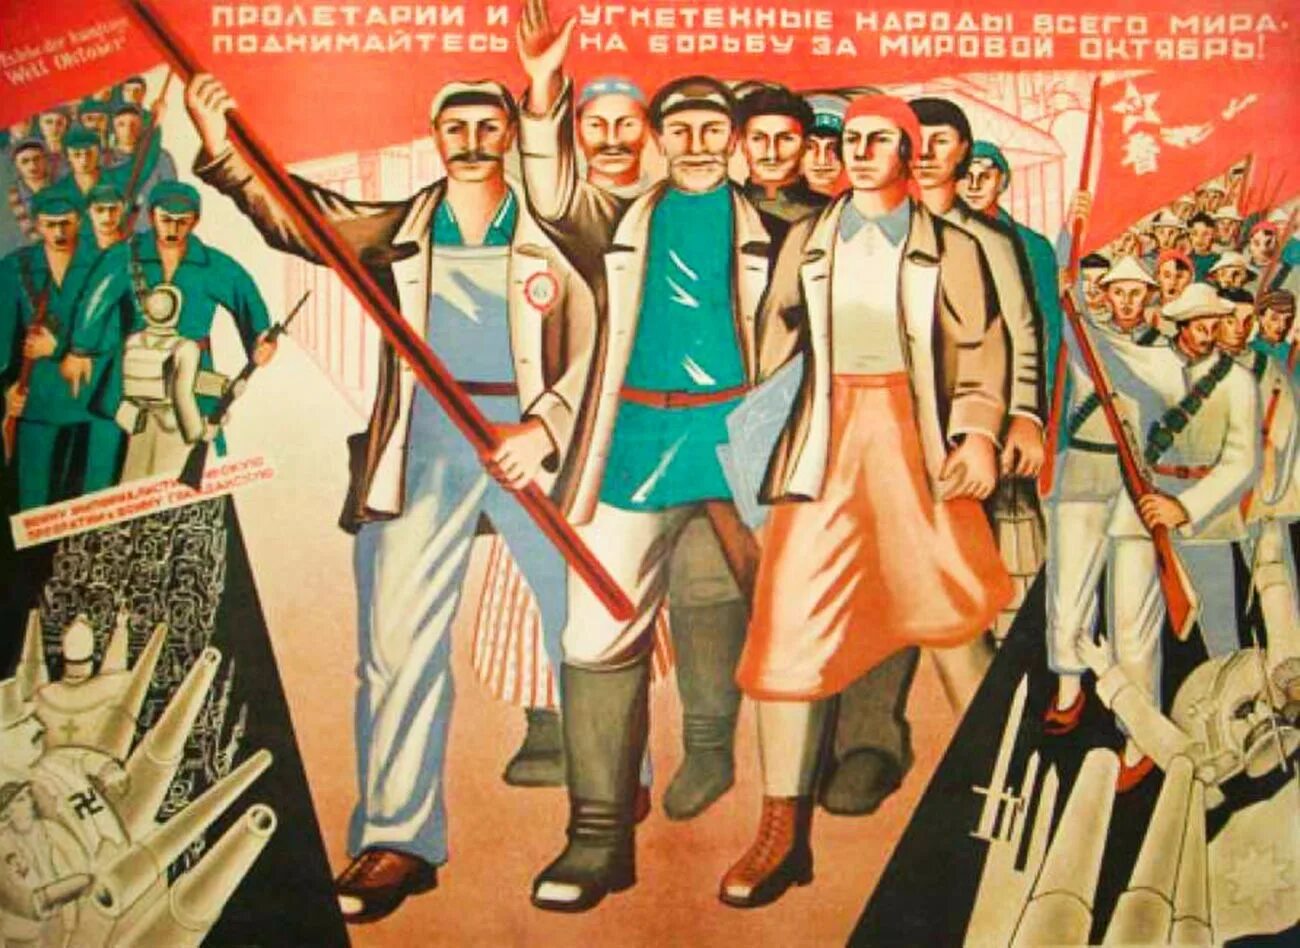 Организации 20 30 годов. Плакаты Всемирная Октябрьская Социалистическая революция. Советские революционные плакаты. Агитационные плакаты 1920 х годов. Пролетариат плакаты.